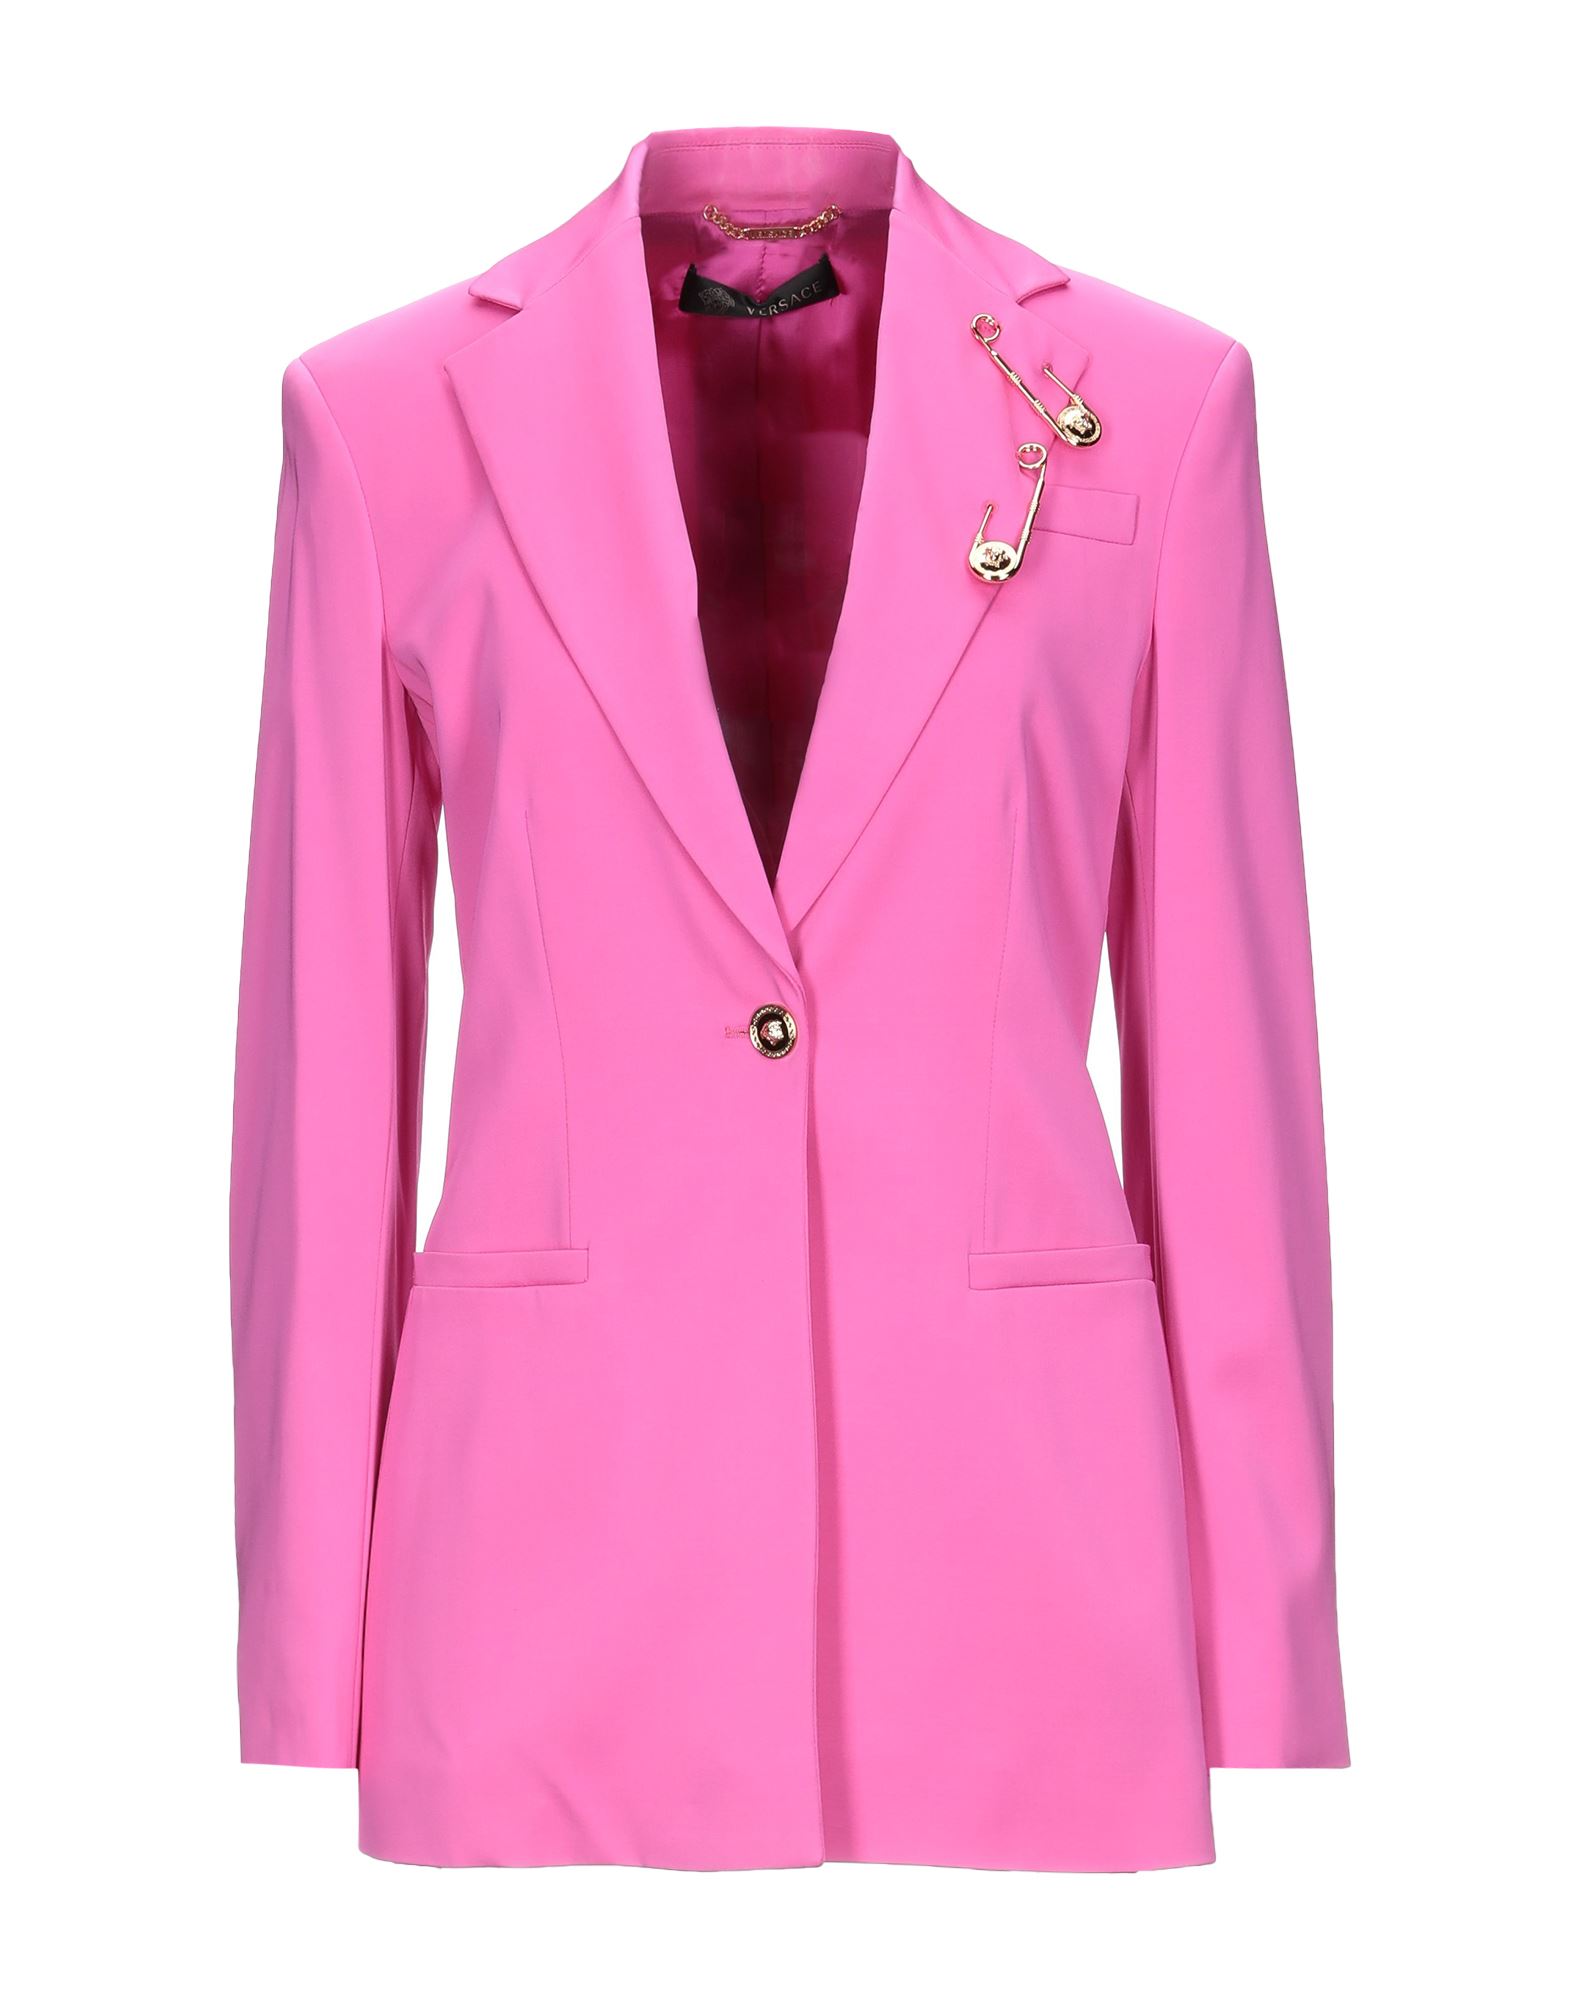 VERSACE Suit jackets - Item 49608510